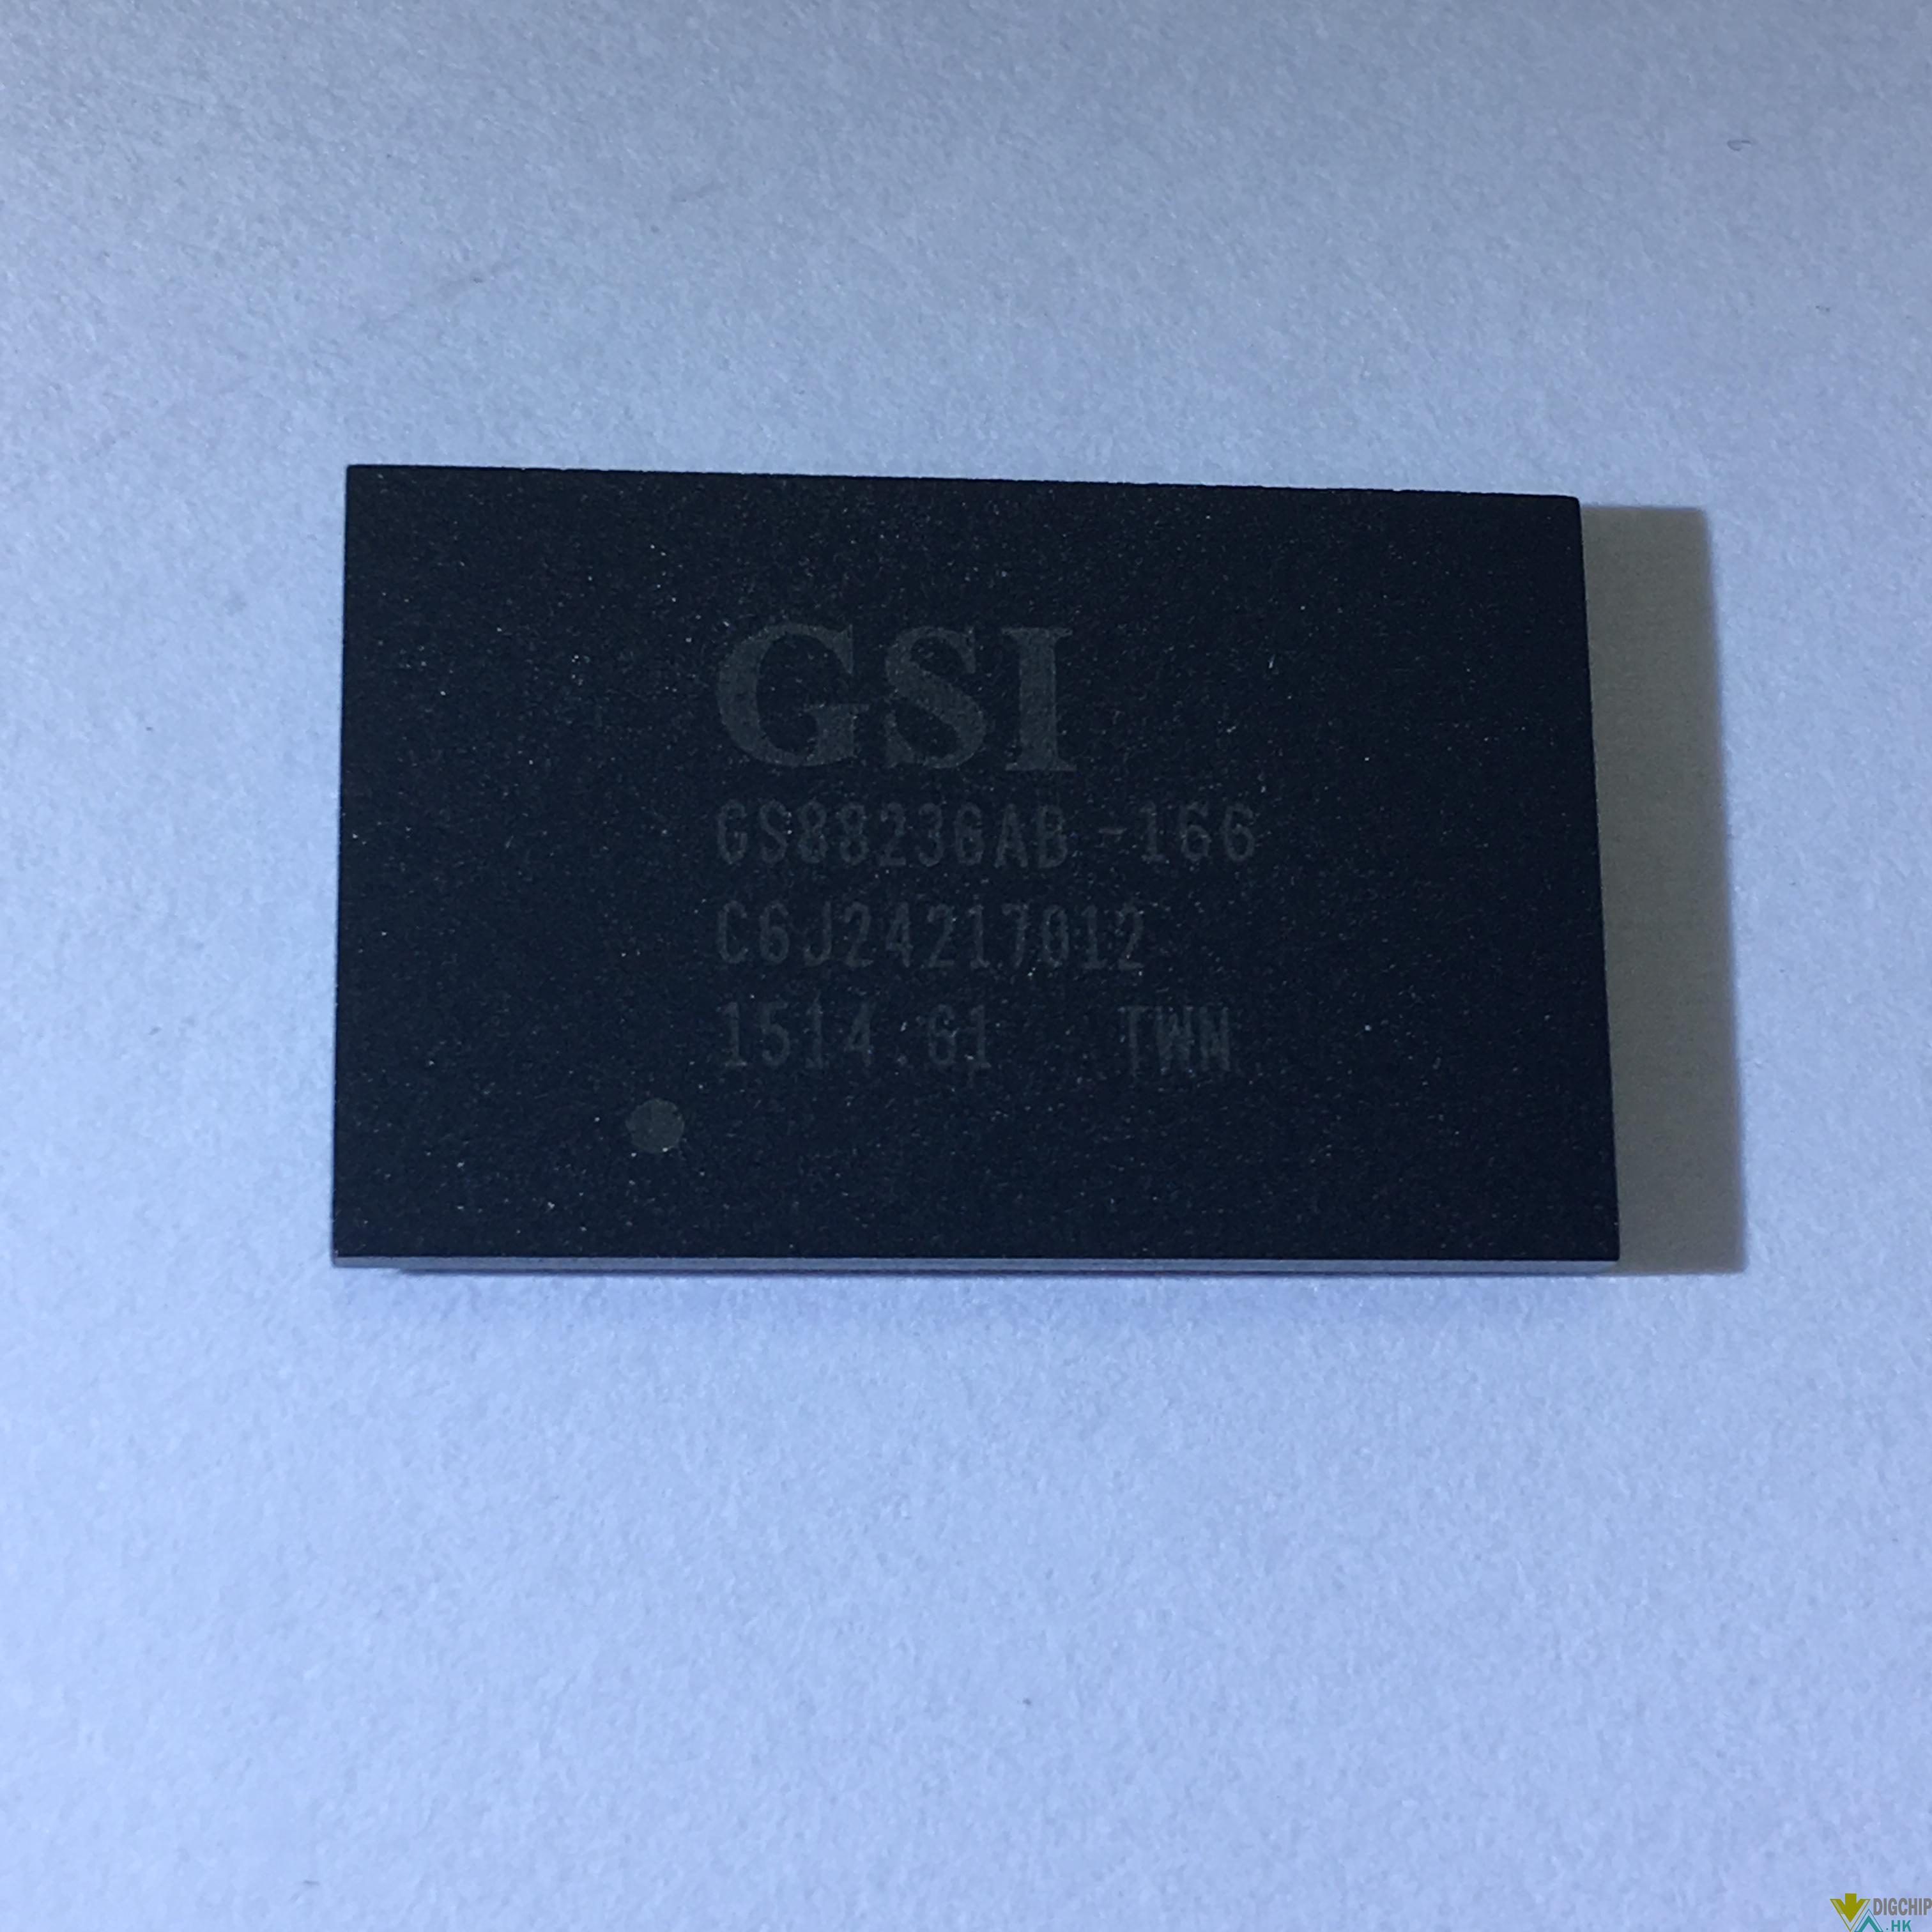 GS88236AB-166